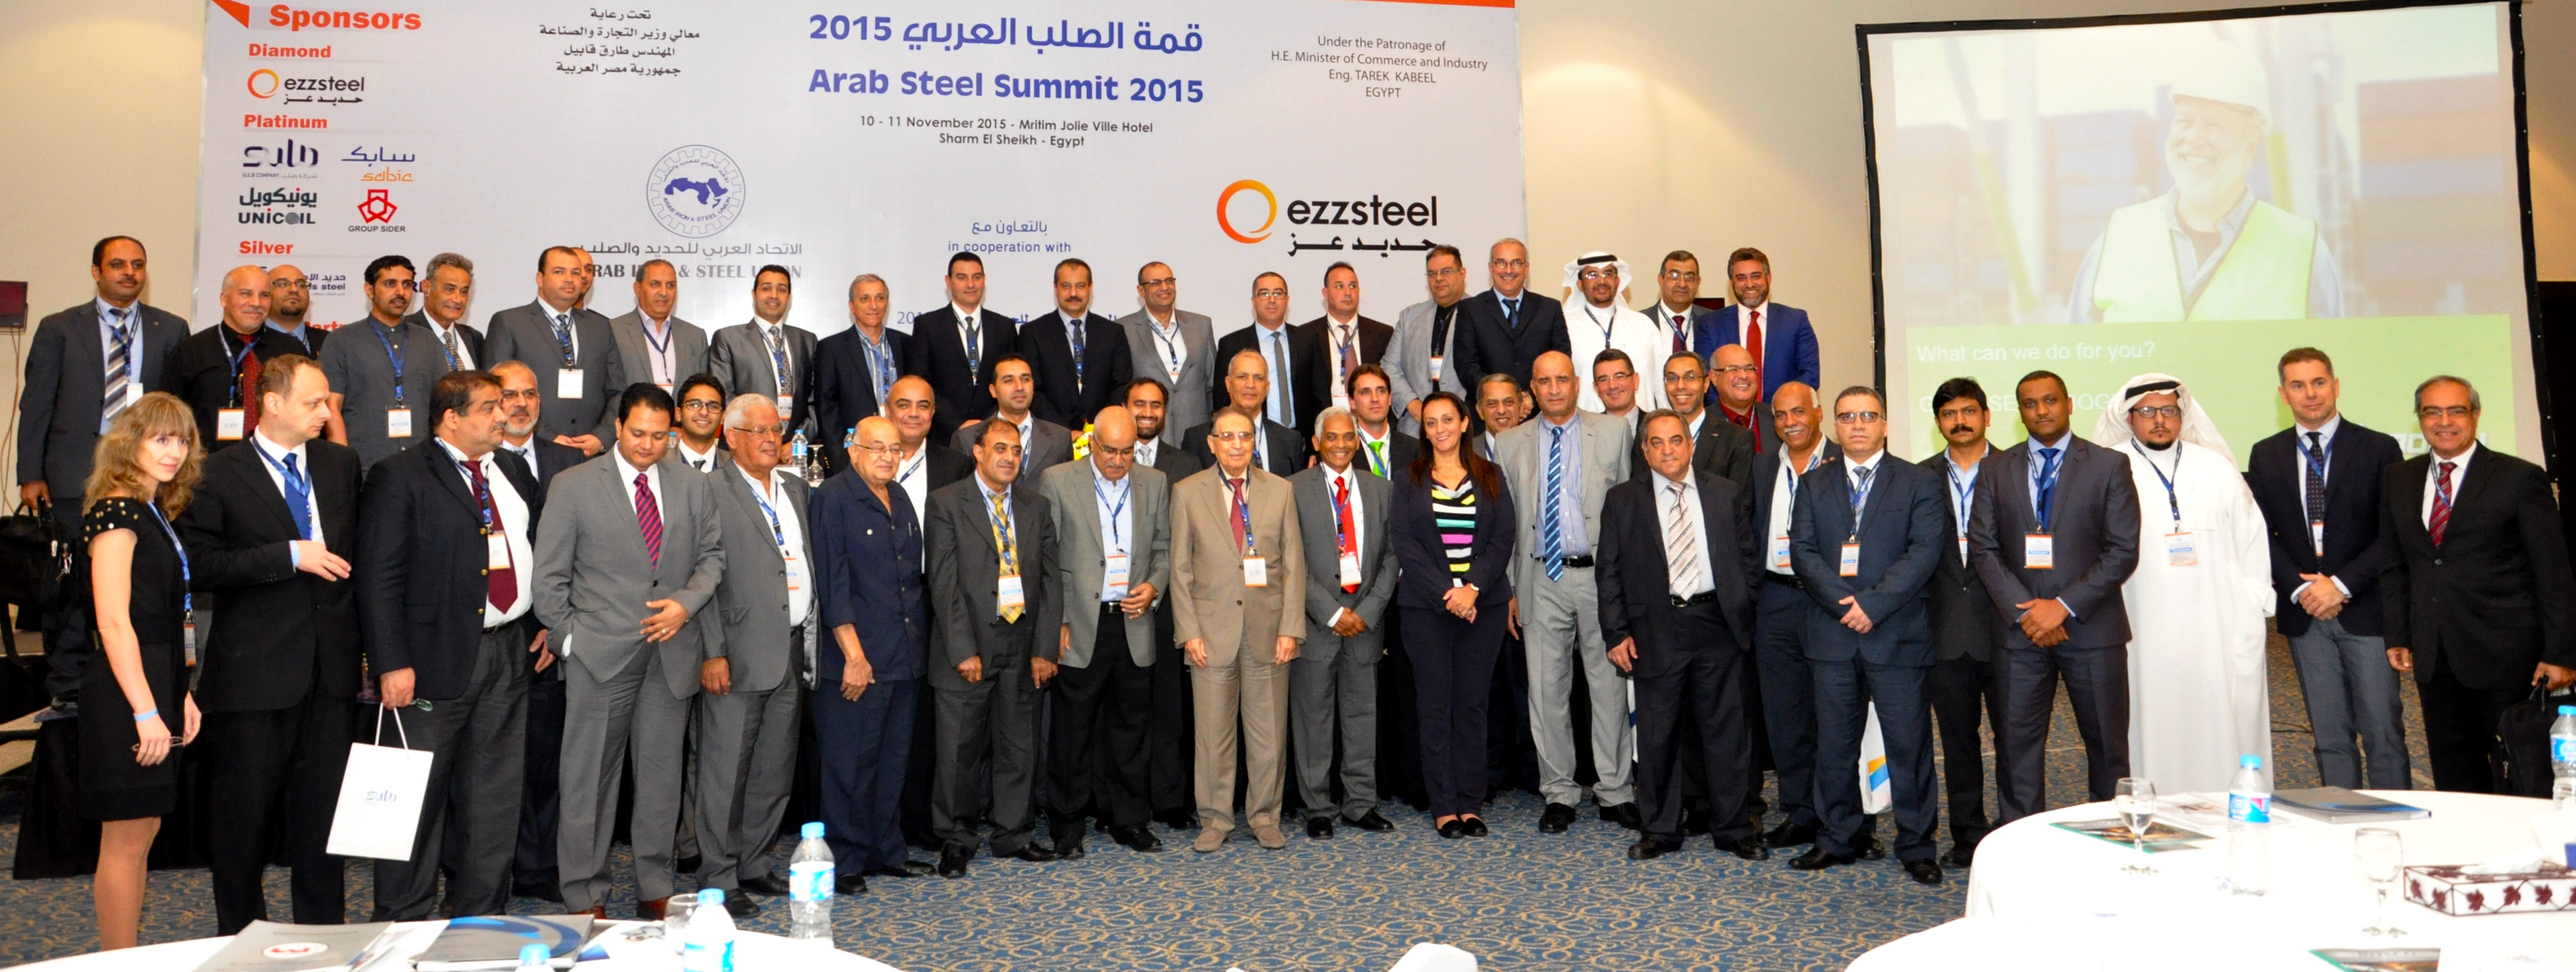 Arab Steel Summit 2015 [10 - 11 Novembre 2015]